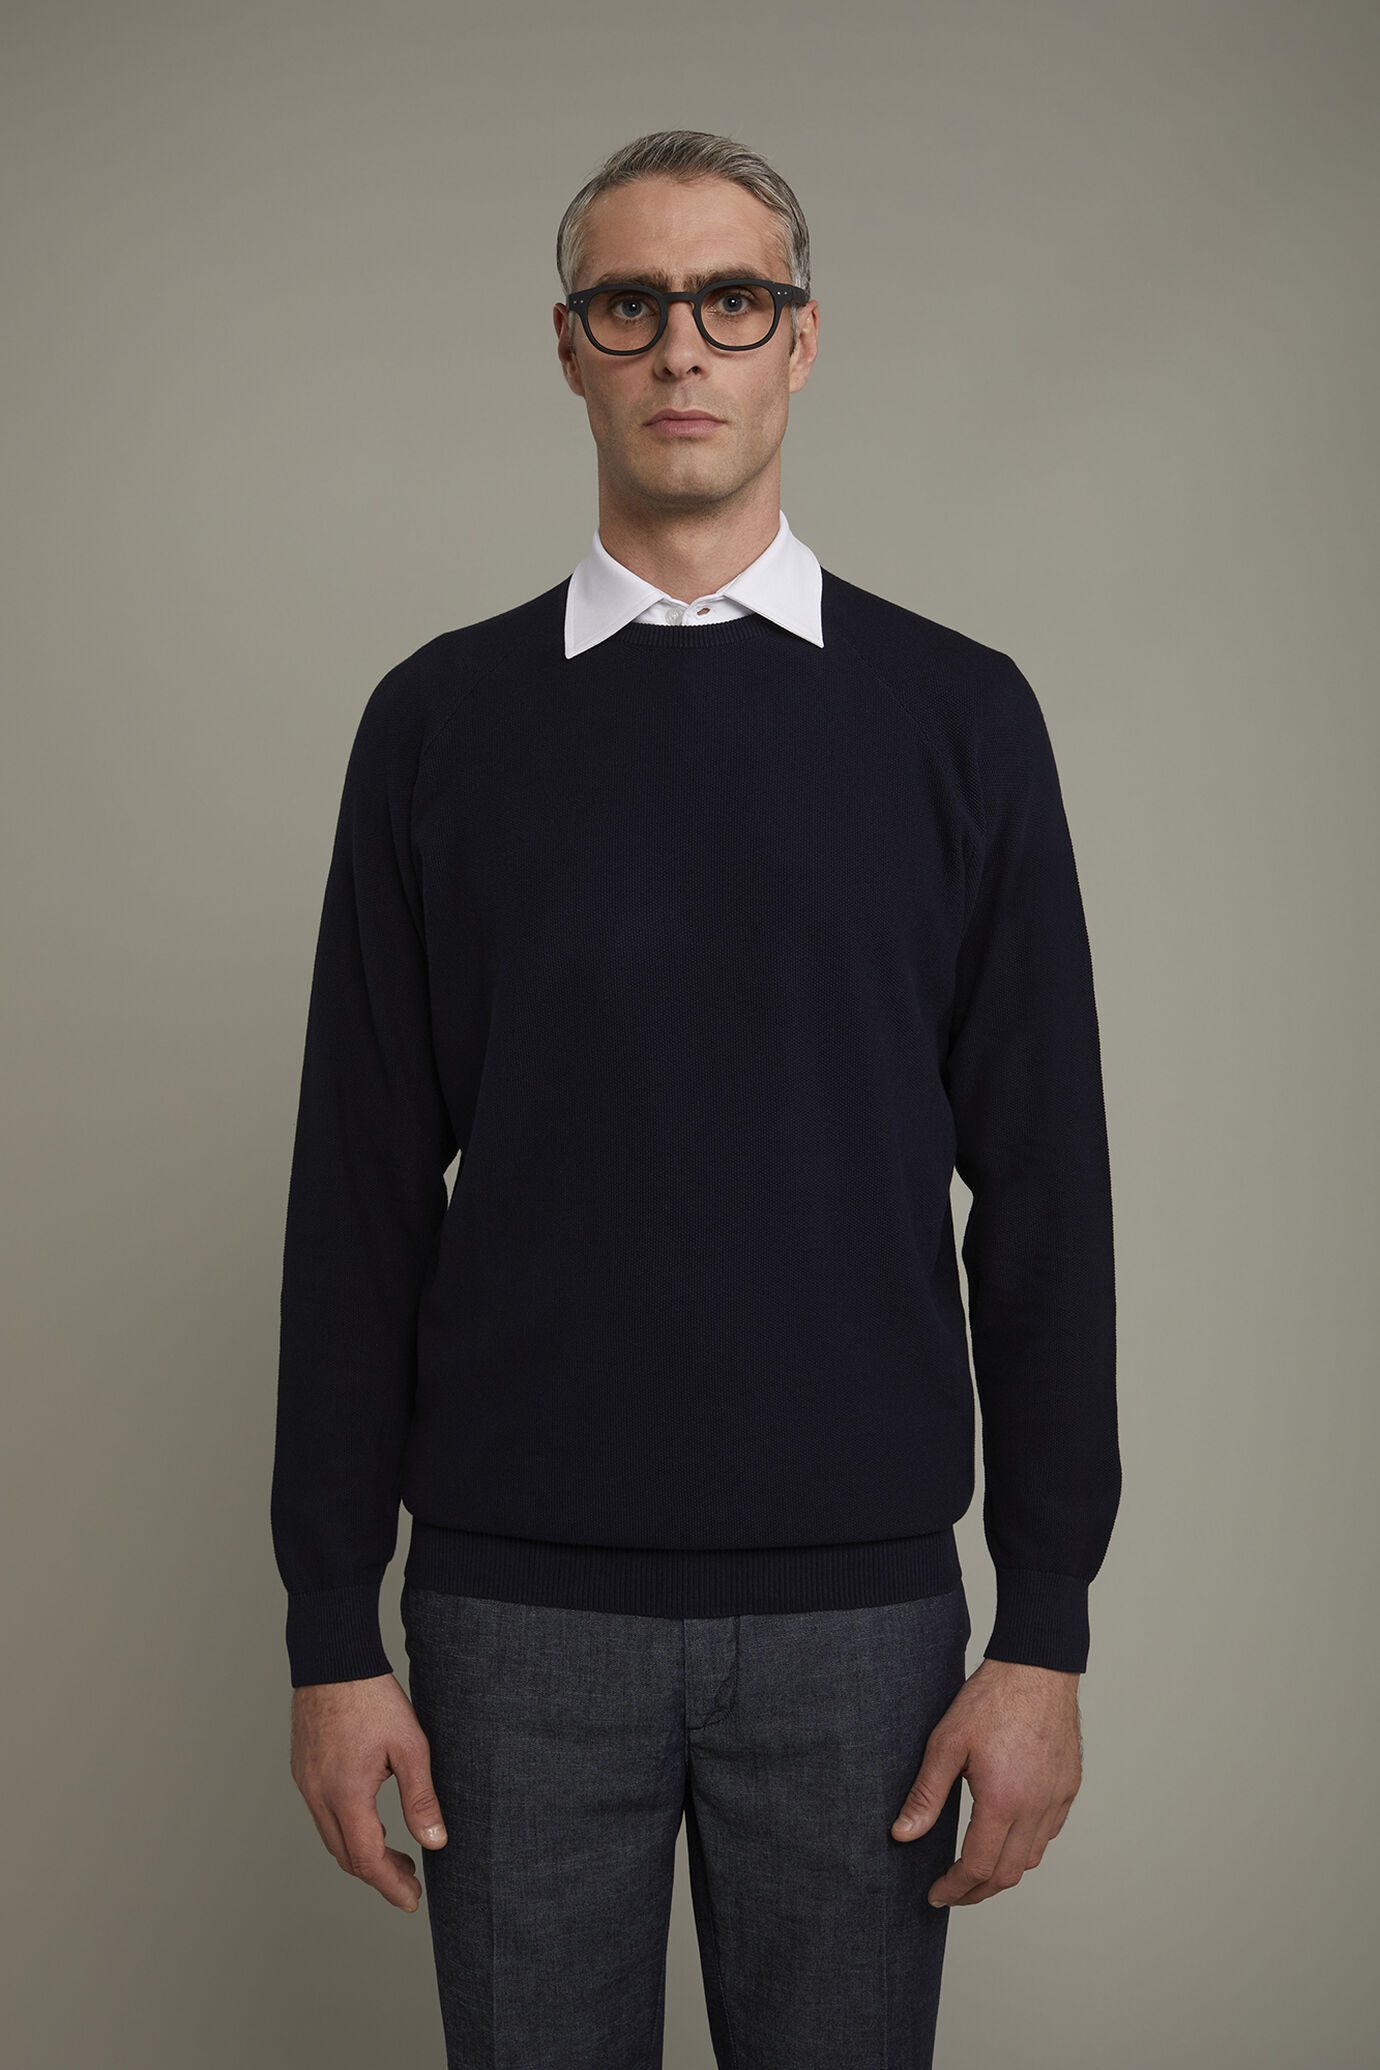 Men's Round neck raglan sweater 100% cotton regular fit